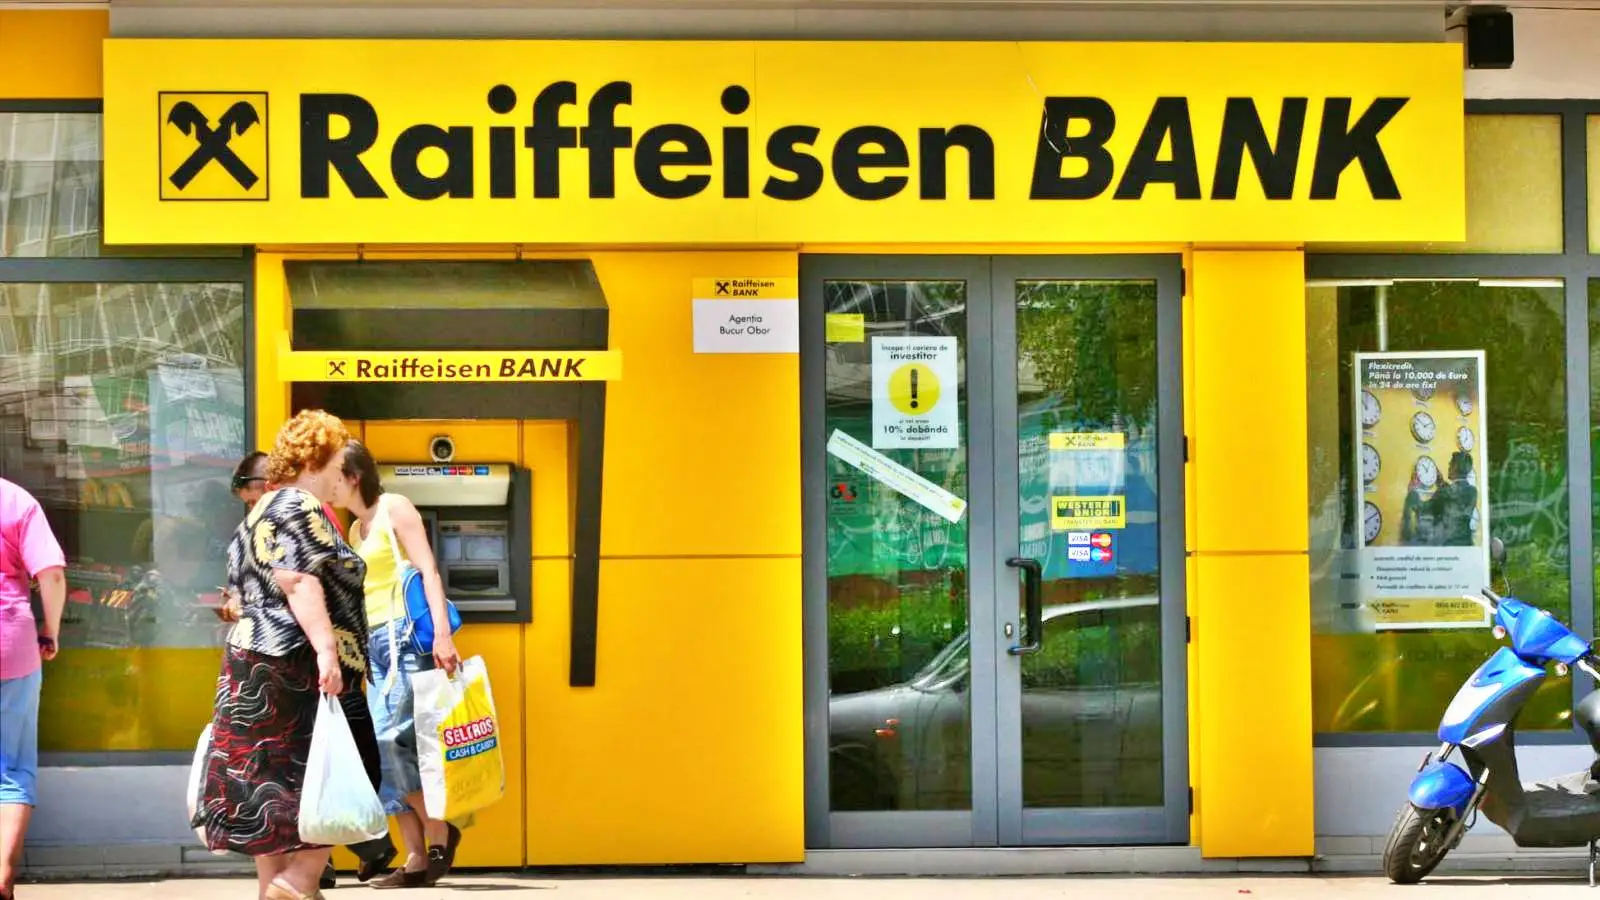 Raiffeisen Bank TÄRKEÄ ilmoitus on suunnattu romanialaisille asiakkaille